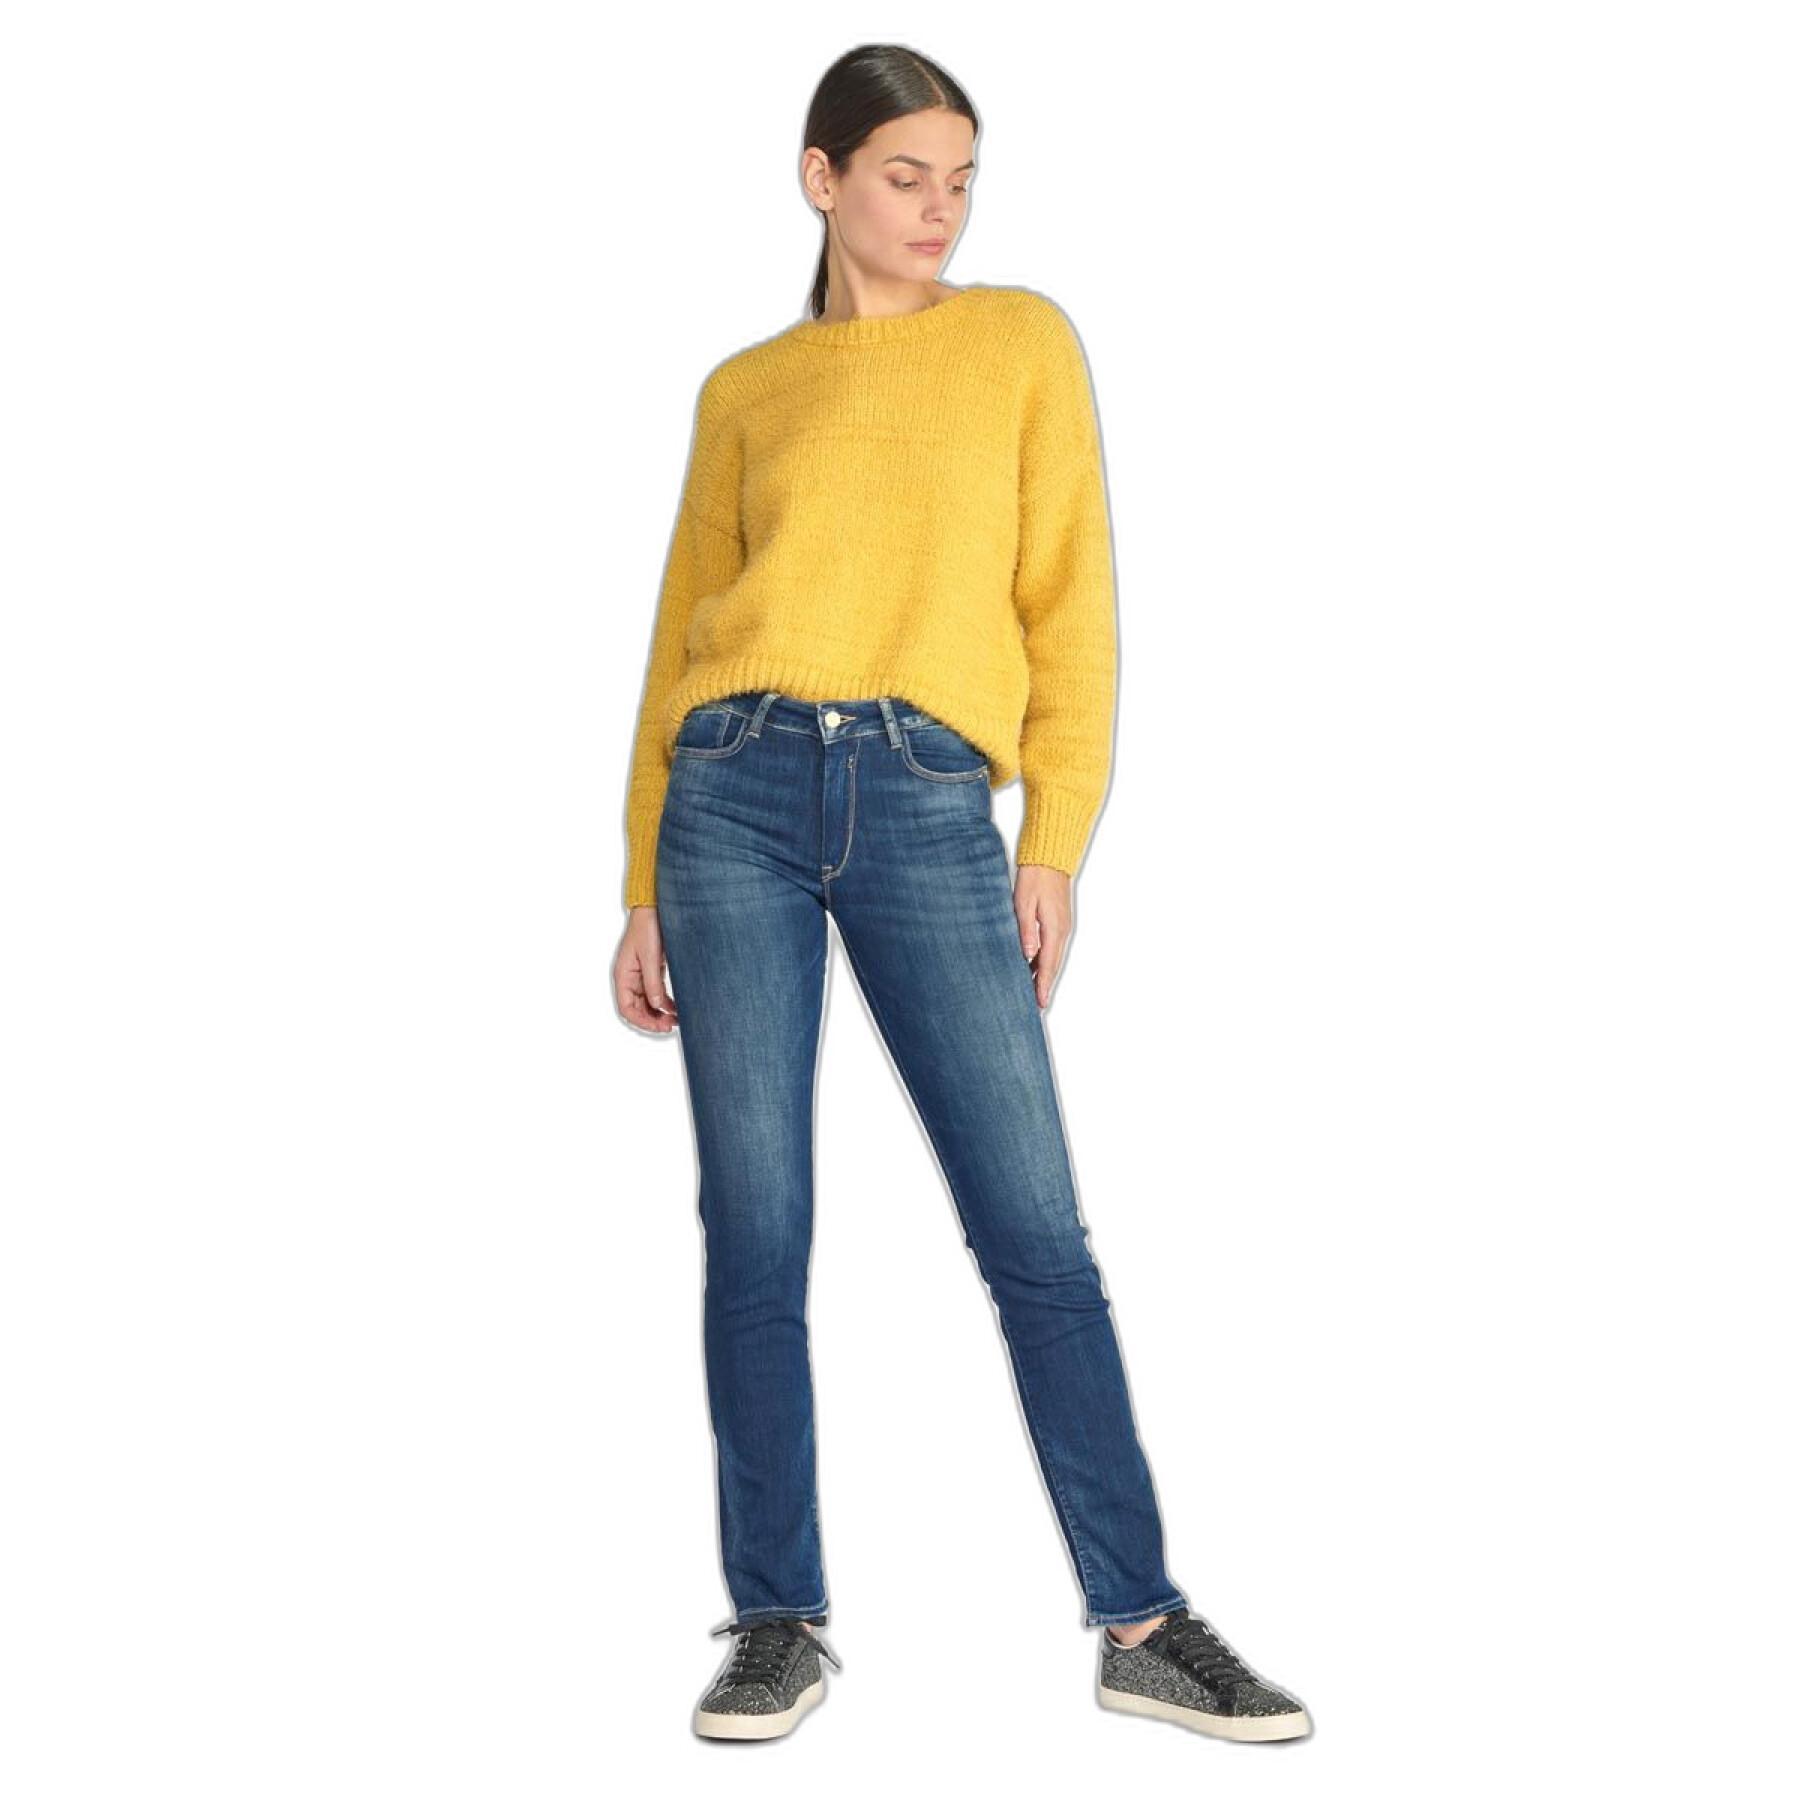 Reguläre Jeans mit hoher Taille Frau Le Temps des cerises Casal Pulp N°2